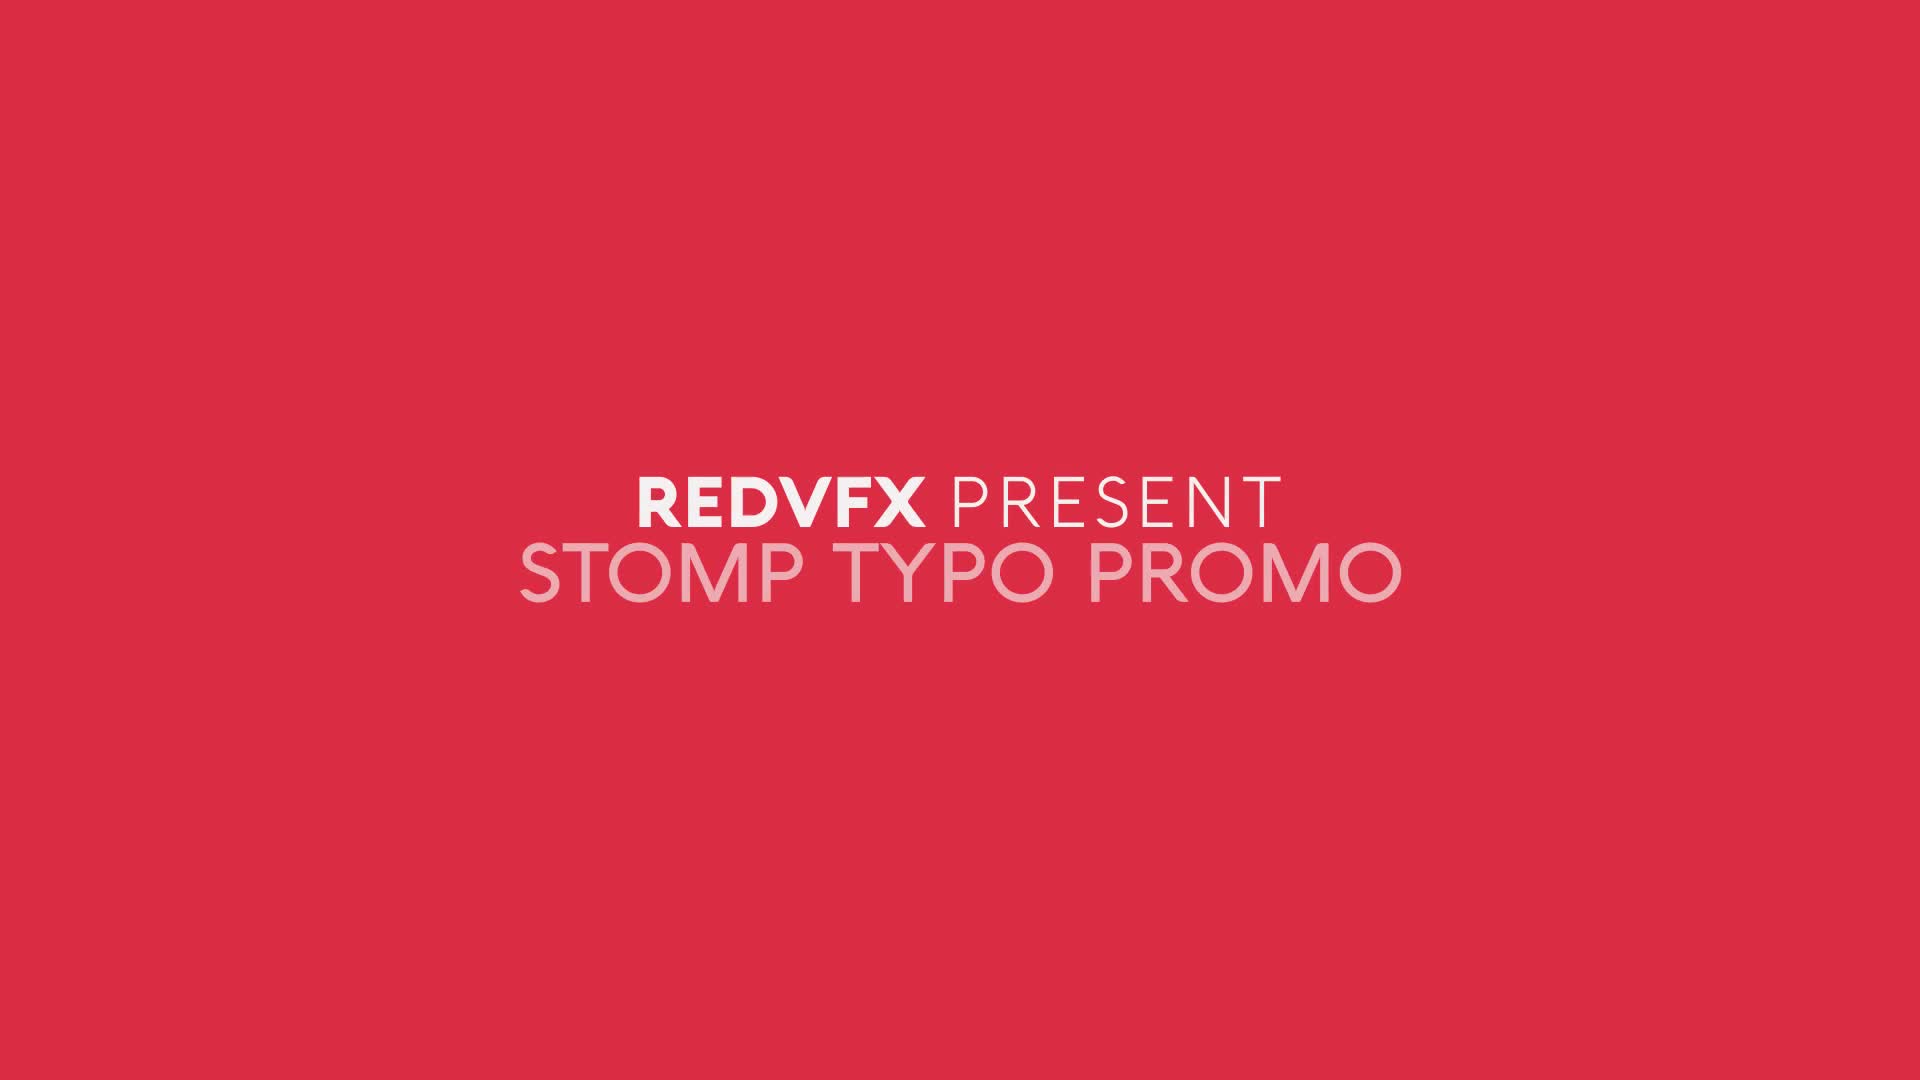 Stomp Typo Promo for Premiere Pro Videohive 34333788 Premiere Pro Image 1